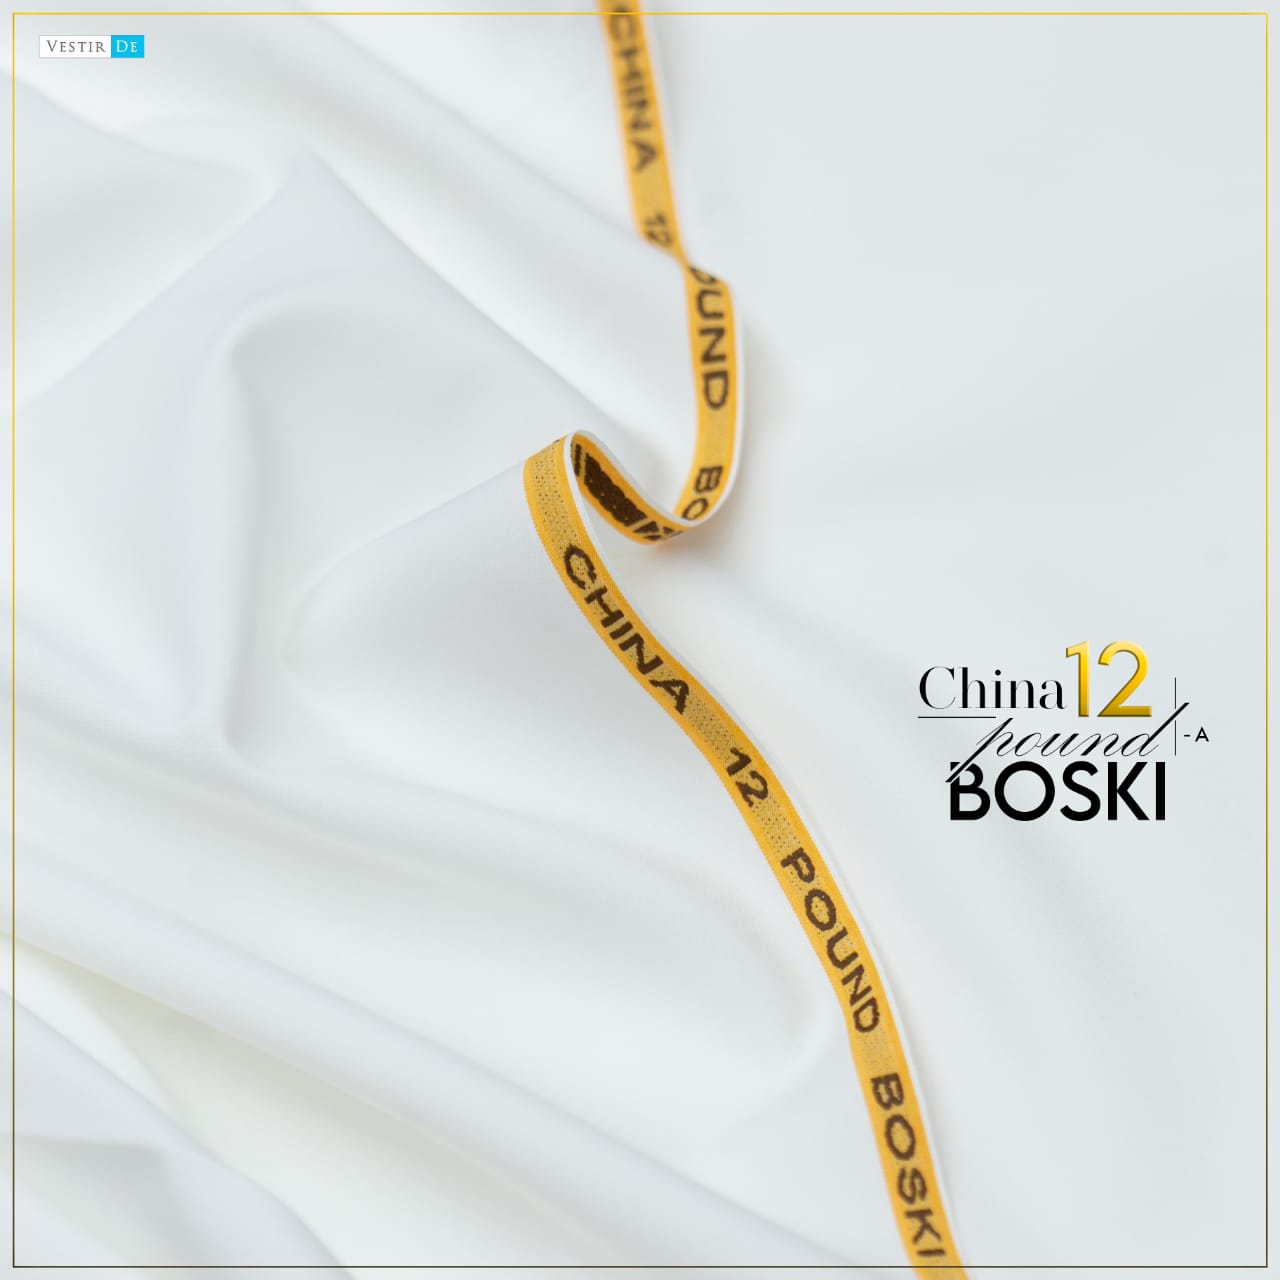 China Boski 12 Pound